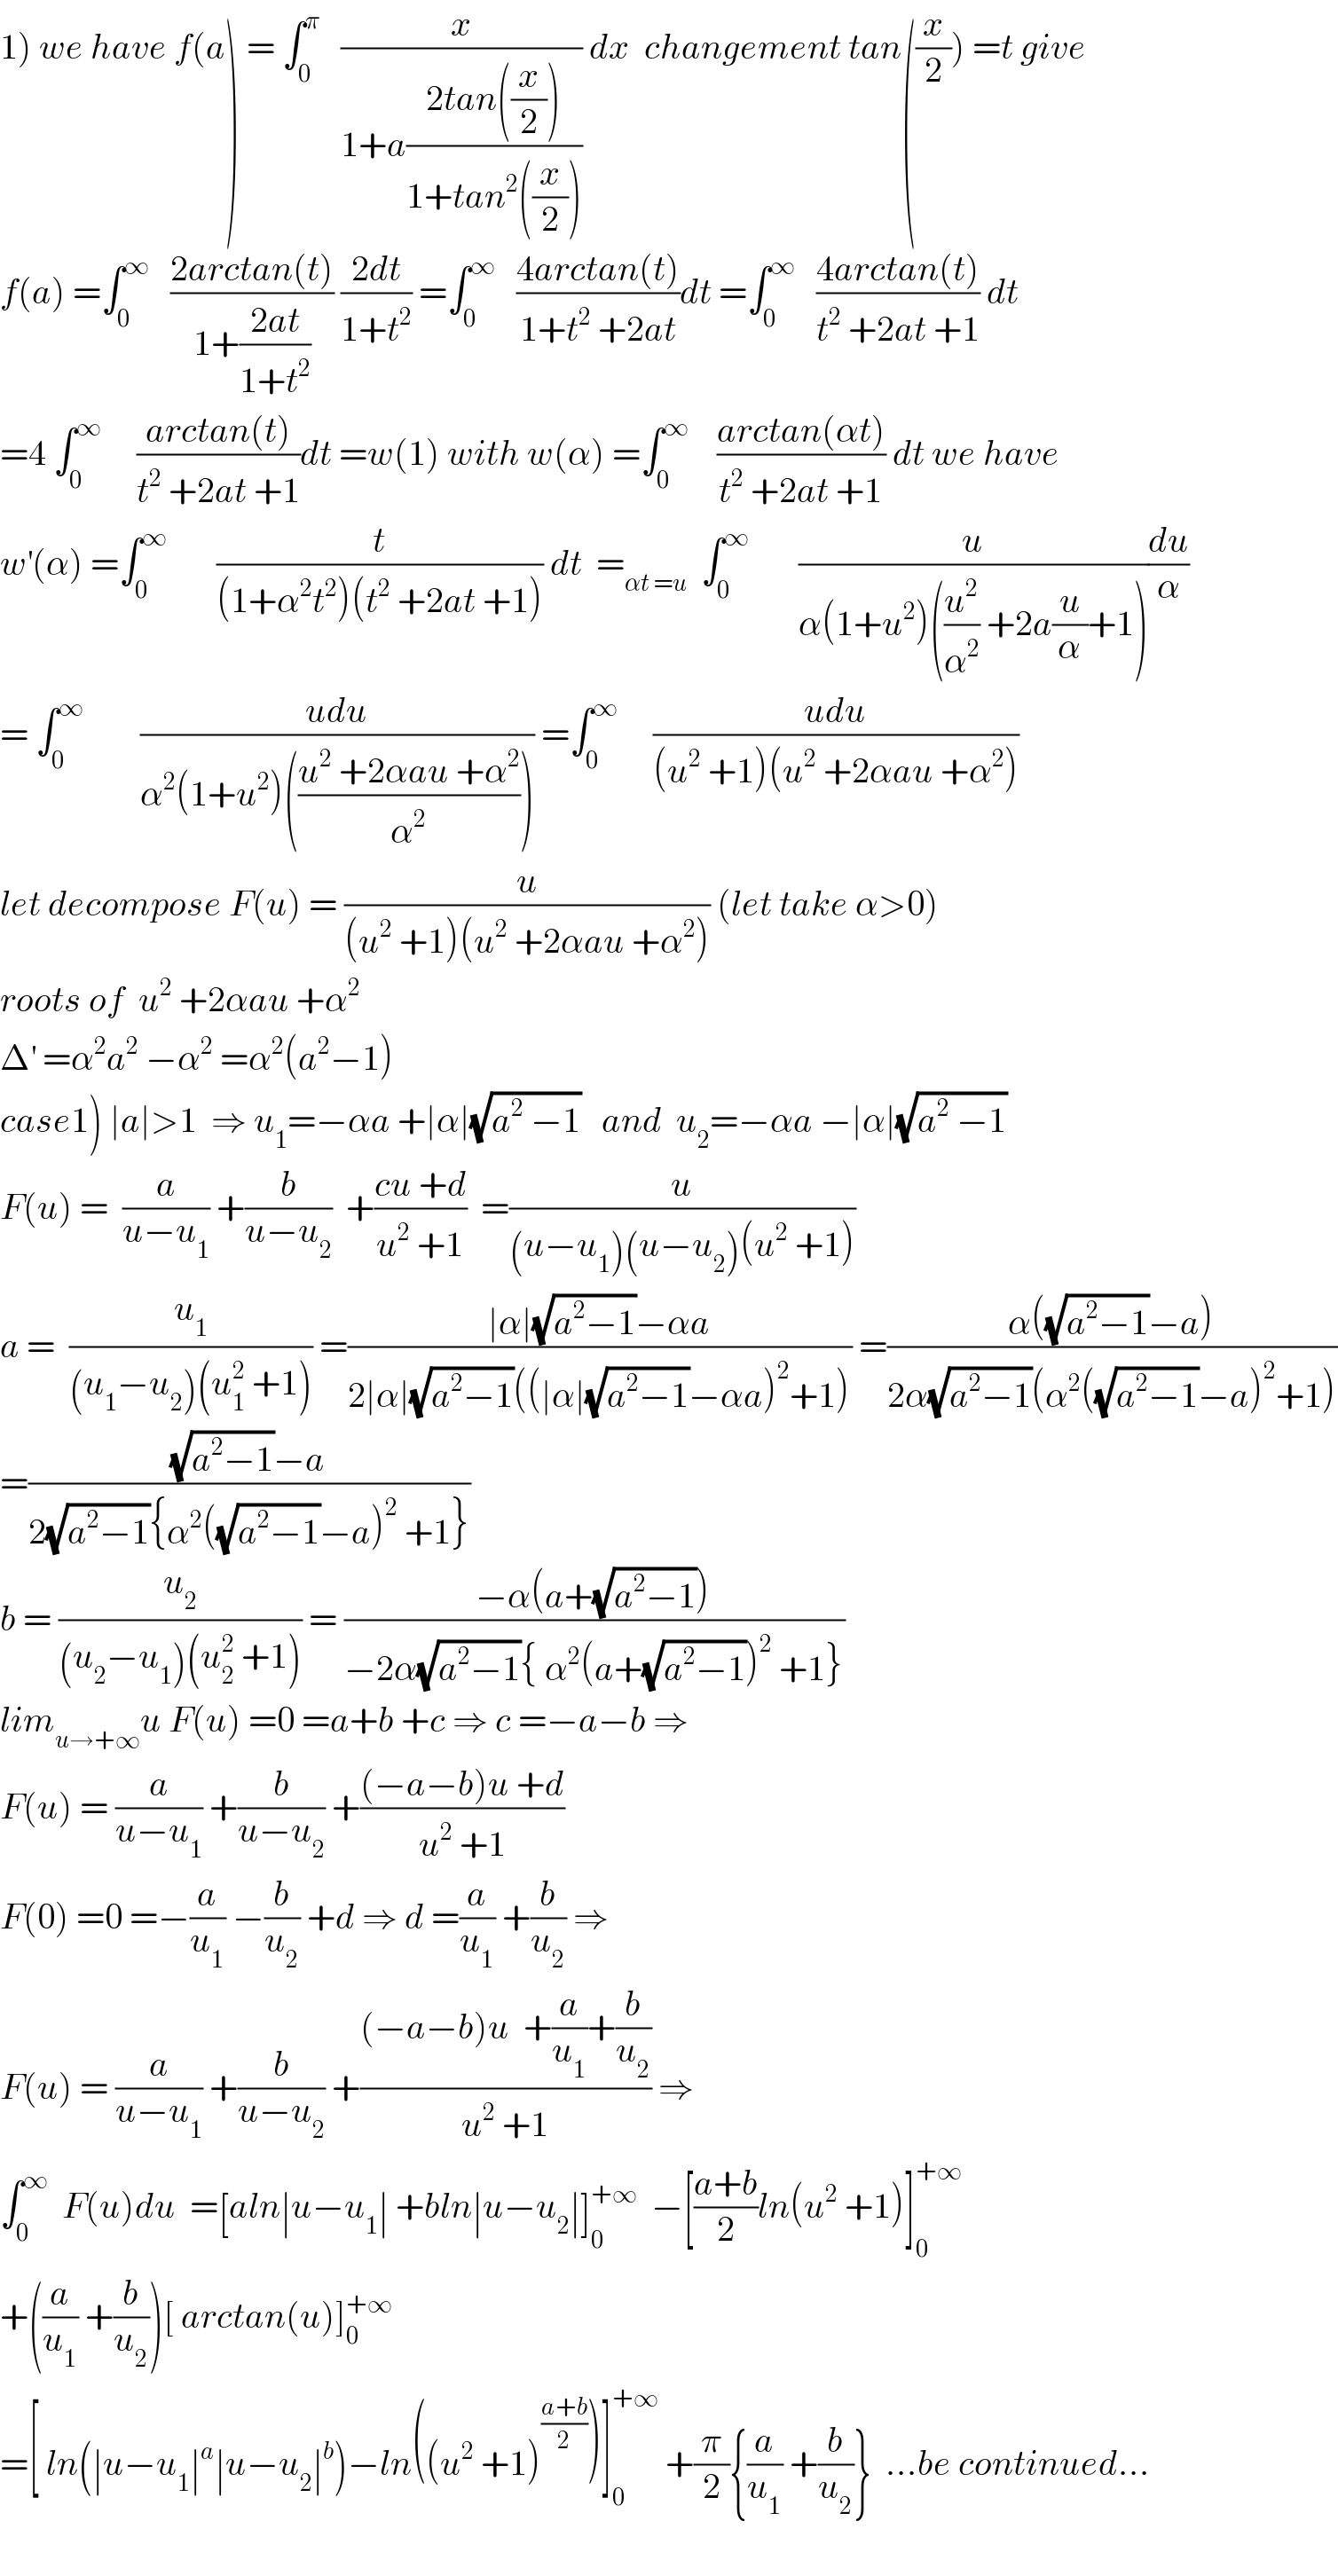 1) we have f(a) = ∫_0 ^π    (x/(1+a((2tan((x/2)))/(1+tan^2 ((x/2)))))) dx  changement tan((x/2)) =t give  f(a) =∫_0 ^∞    ((2arctan(t))/(1+((2at)/(1+t^2 )))) ((2dt)/(1+t^2 )) =∫_0 ^∞    ((4arctan(t))/(1+t^2  +2at))dt =∫_0 ^∞    ((4arctan(t))/(t^2  +2at +1)) dt  =4 ∫_0 ^∞      ((arctan(t))/(t^2  +2at +1))dt =w(1) with w(α) =∫_0 ^∞     ((arctan(αt))/(t^2  +2at +1)) dt we have  w^′ (α) =∫_0 ^∞        (t/((1+α^2 t^2 )(t^2  +2at +1))) dt  =_(αt =u)   ∫_0 ^∞        (u/(α(1+u^2 )((u^2 /α^2 ) +2a(u/α)+1)))(du/α)  = ∫_0 ^∞         ((udu)/(α^2 (1+u^2 )(((u^2  +2αau +α^2 )/α^2 )))) =∫_0 ^∞      ((udu)/((u^2  +1)(u^2  +2αau +α^2 )))  let decompose F(u) = (u/((u^2  +1)(u^2  +2αau +α^2 ))) (let take α>0)  roots of  u^2  +2αau +α^2   Δ^′  =α^2 a^2  −α^2  =α^2 (a^2 −1)  case1) ∣a∣>1  ⇒ u_1 =−αa +∣α∣(√(a^2  −1))   and  u_2 =−αa −∣α∣(√(a^2  −1))  F(u) =  (a/(u−u_1 )) +(b/(u−u_2 ))  +((cu +d)/(u^2  +1))  =(u/((u−u_1 )(u−u_2 )(u^2  +1)))  a =  (u_1 /((u_1 −u_2 )(u_1 ^2  +1))) =((∣α∣(√(a^2 −1))−αa)/(2∣α∣(√(a^2 −1))((∣α∣(√(a^2 −1))−αa)^2 +1))) =((α((√(a^2 −1))−a))/(2α(√(a^2 −1))(α^2 ((√(a^2 −1))−a)^2 +1)))  =(((√(a^2 −1))−a)/(2(√(a^2 −1)){α^2 ((√(a^2 −1))−a)^2  +1}))  b = (u_2 /((u_2 −u_1 )(u_2 ^2  +1))) = ((−α(a+(√(a^2 −1))))/(−2α(√(a^2 −1)){ α^2 (a+(√(a^2 −1)))^2  +1}))  lim_(u→+∞) u F(u) =0 =a+b +c ⇒ c =−a−b ⇒  F(u) = (a/(u−u_1 )) +(b/(u−u_2 )) +(((−a−b)u +d)/(u^2  +1))  F(0) =0 =−(a/u_1 ) −(b/u_2 ) +d ⇒ d =(a/u_1 ) +(b/u_2 ) ⇒  F(u) = (a/(u−u_1 )) +(b/(u−u_2 )) +(((−a−b)u  +(a/u_1 )+(b/u_2 ))/(u^2  +1)) ⇒  ∫_0 ^∞   F(u)du  =[aln∣u−u_1 ∣ +bln∣u−u_2 ∣]_0 ^(+∞)   −[((a+b)/2)ln(u^2  +1)]_0 ^(+∞)   +((a/u_1 ) +(b/u_2 ))[ arctan(u)]_0 ^(+∞)   =[ ln(∣u−u_1 ∣^a ∣u−u_2 ∣^b )−ln((u^2  +1)^((a+b)/2) )]_0 ^(+∞)  +(π/2){(a/u_1 ) +(b/u_2 )}  ...be continued...    